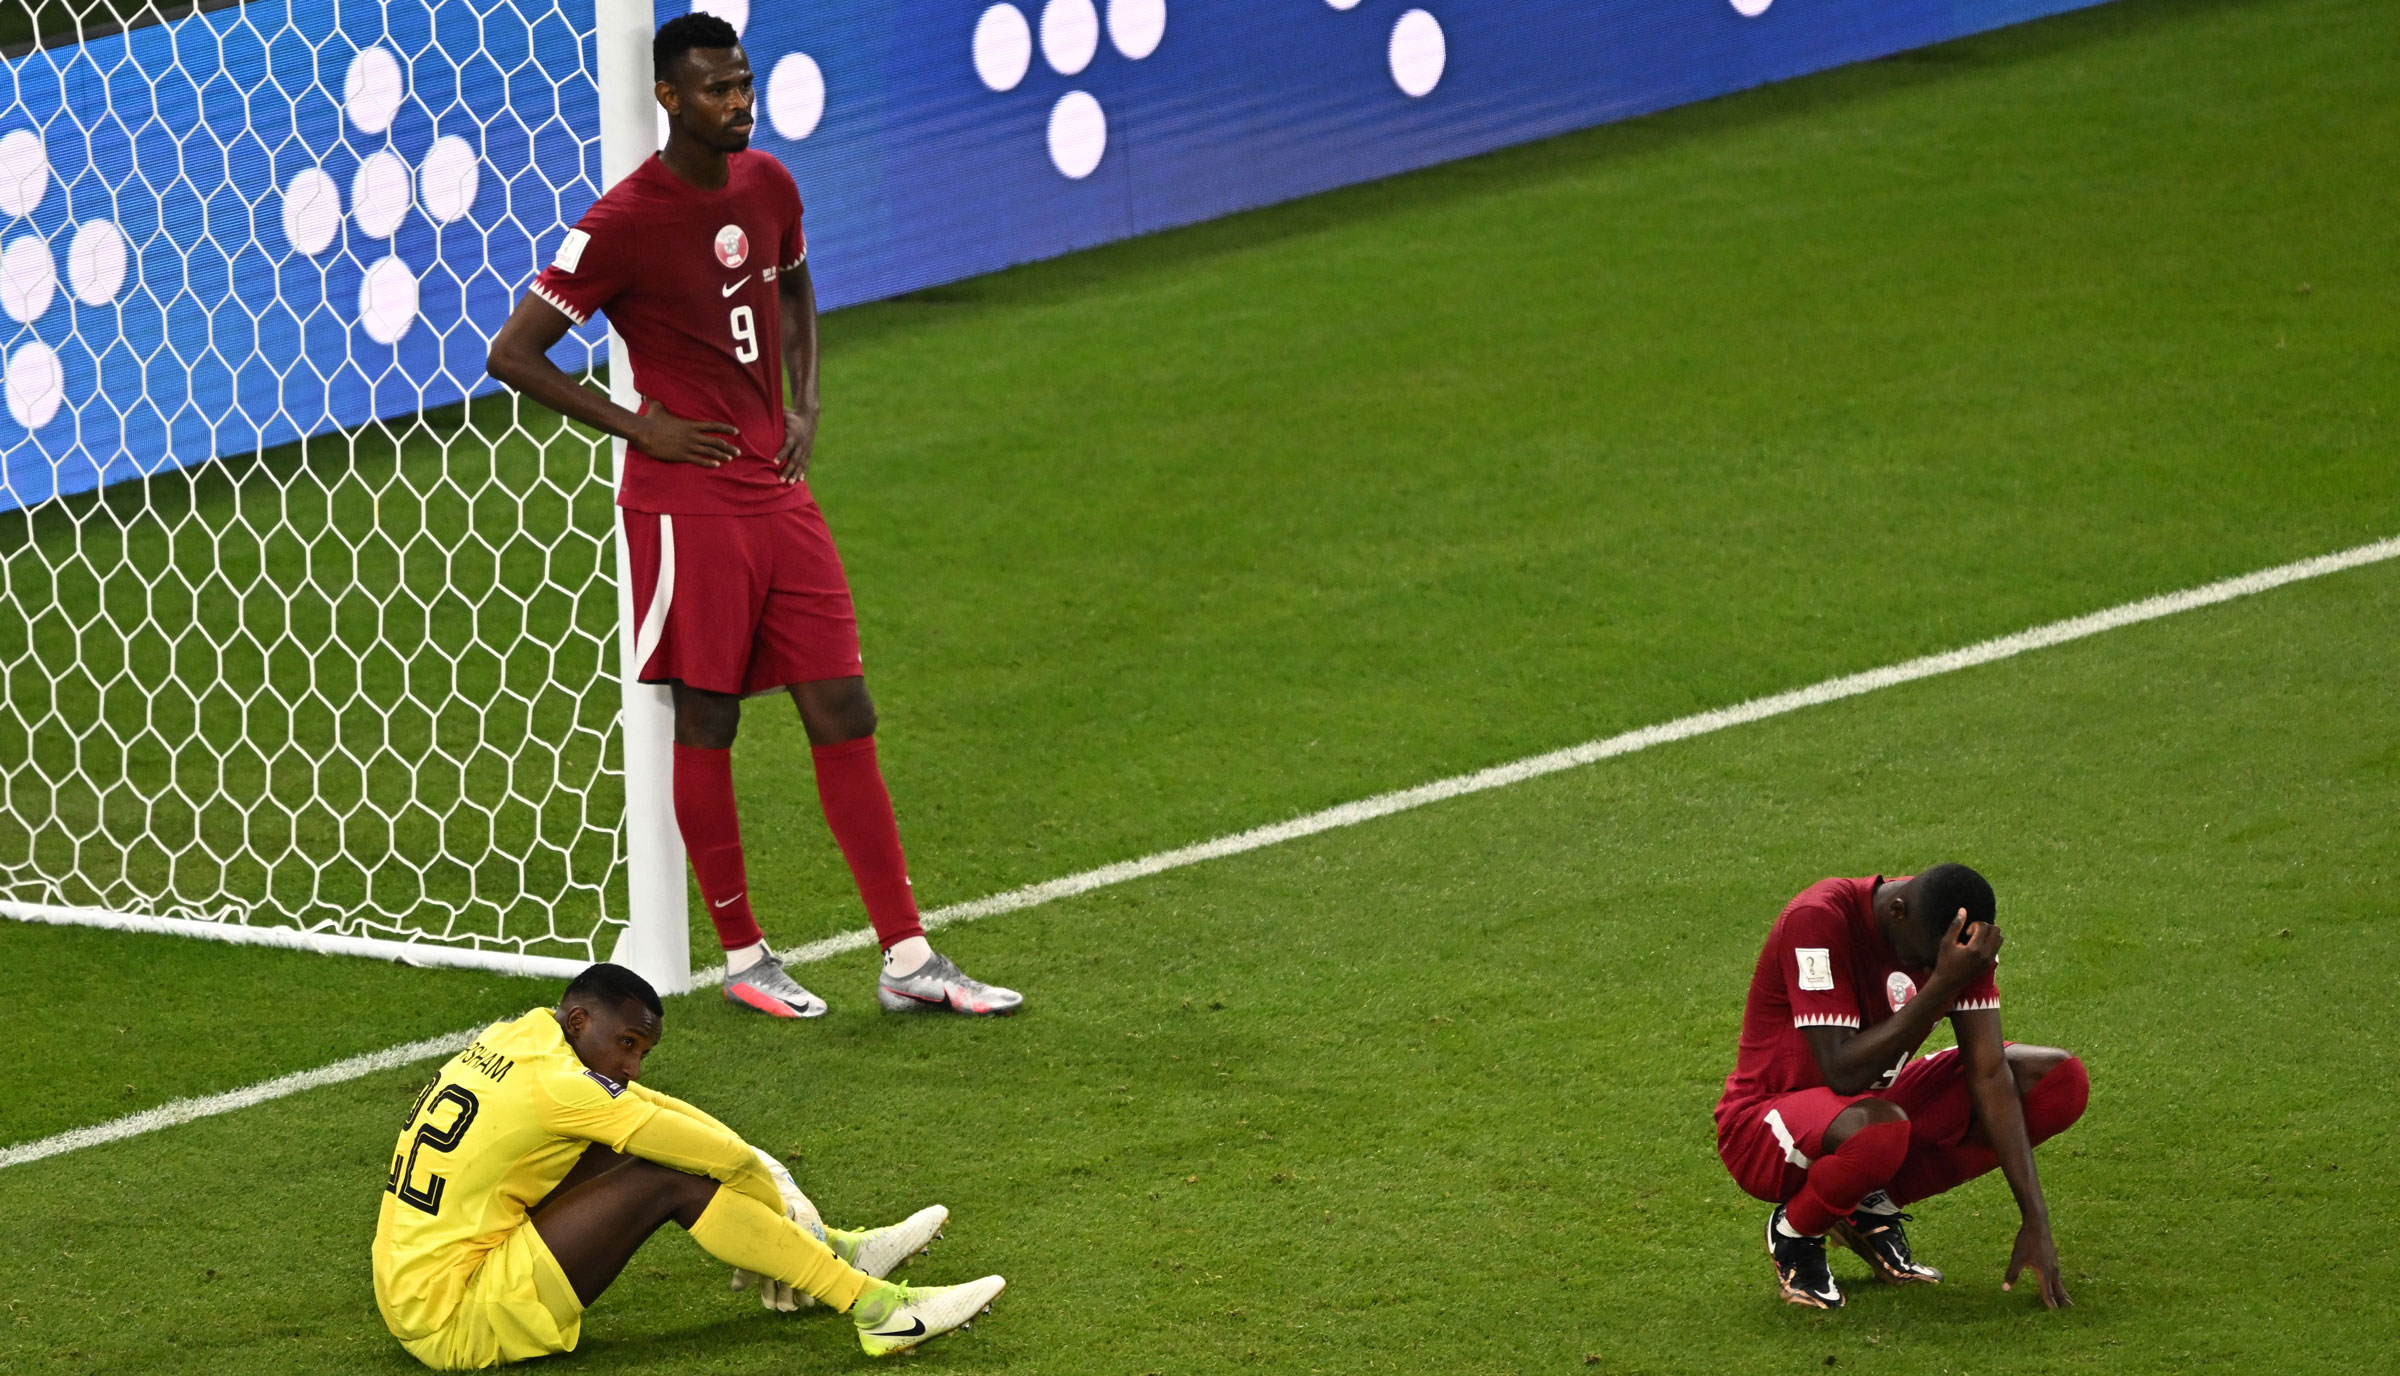 Katar najszybciej w historii odpada z mistrzostw świata